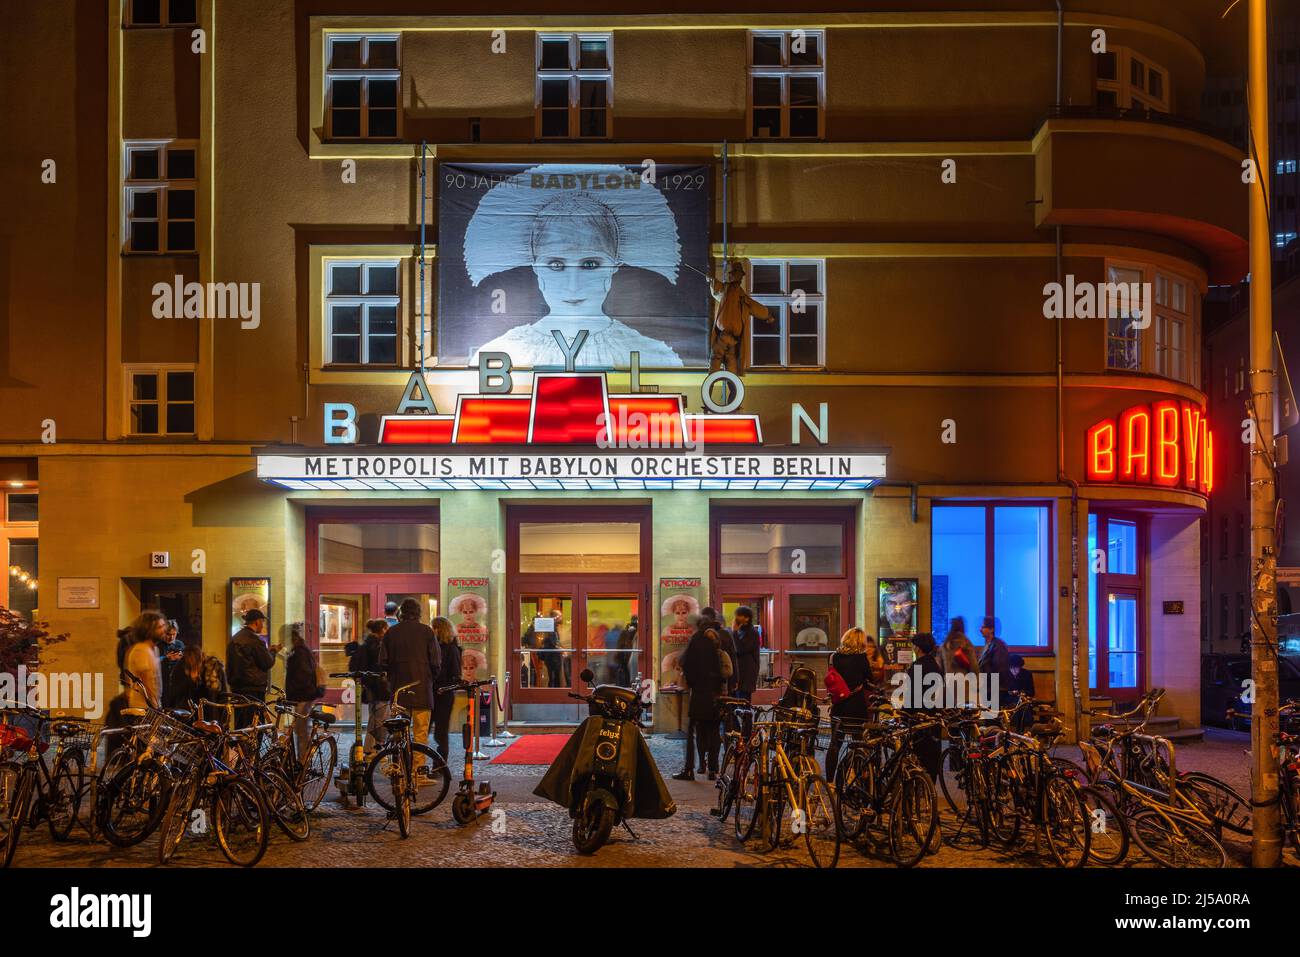 Babylon cinema di notte (Kino Babylon) - un iconico cinema d'arte all'interno di un edificio storico nel distretto di Berlino Mitte, Berlino, Germania, UE Foto Stock